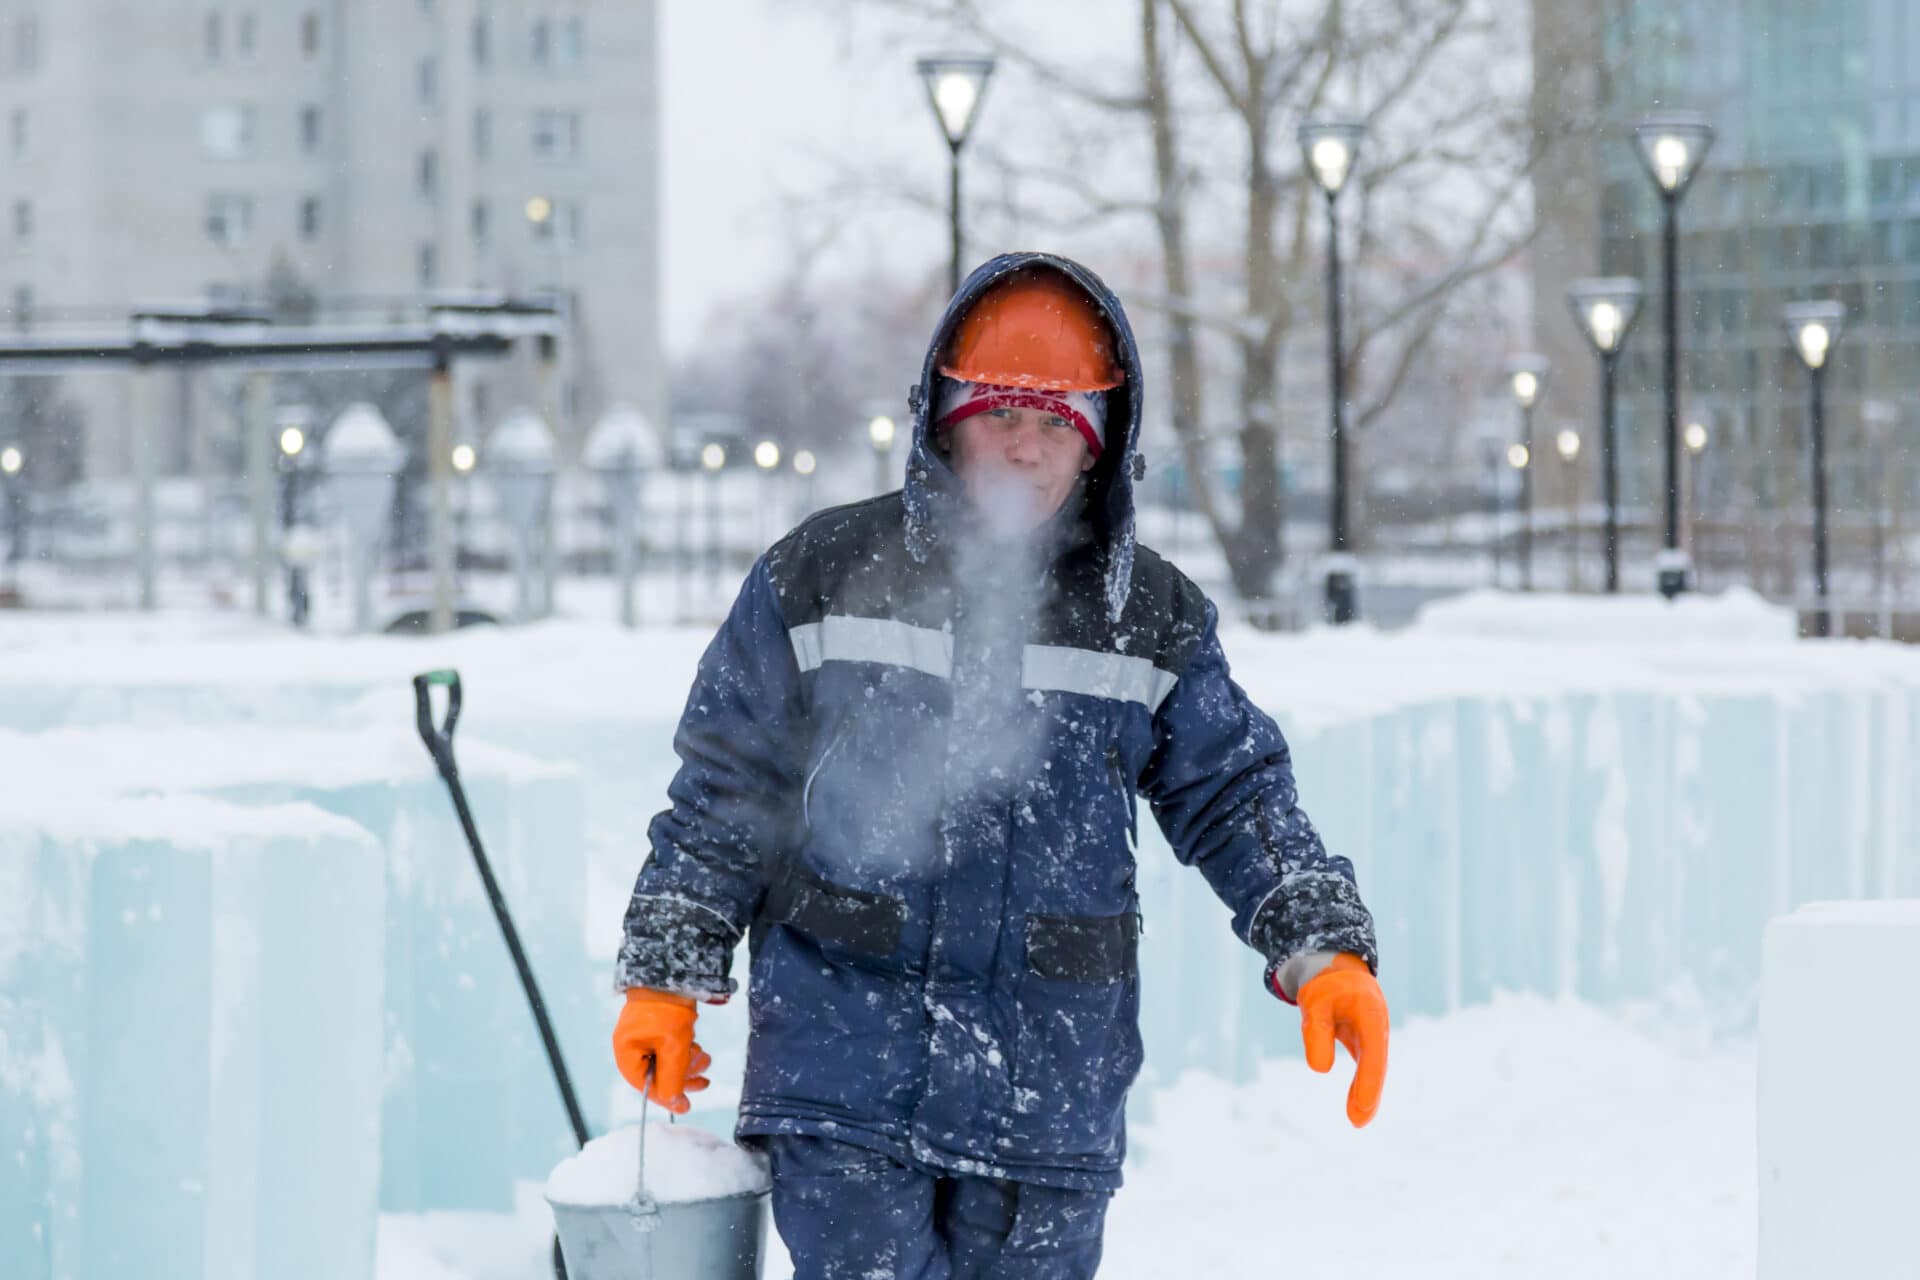 Pracovné vybavenie do chladného počasia: Ako najlepšie vybavíte svoju spoločnosť a zamestnancov